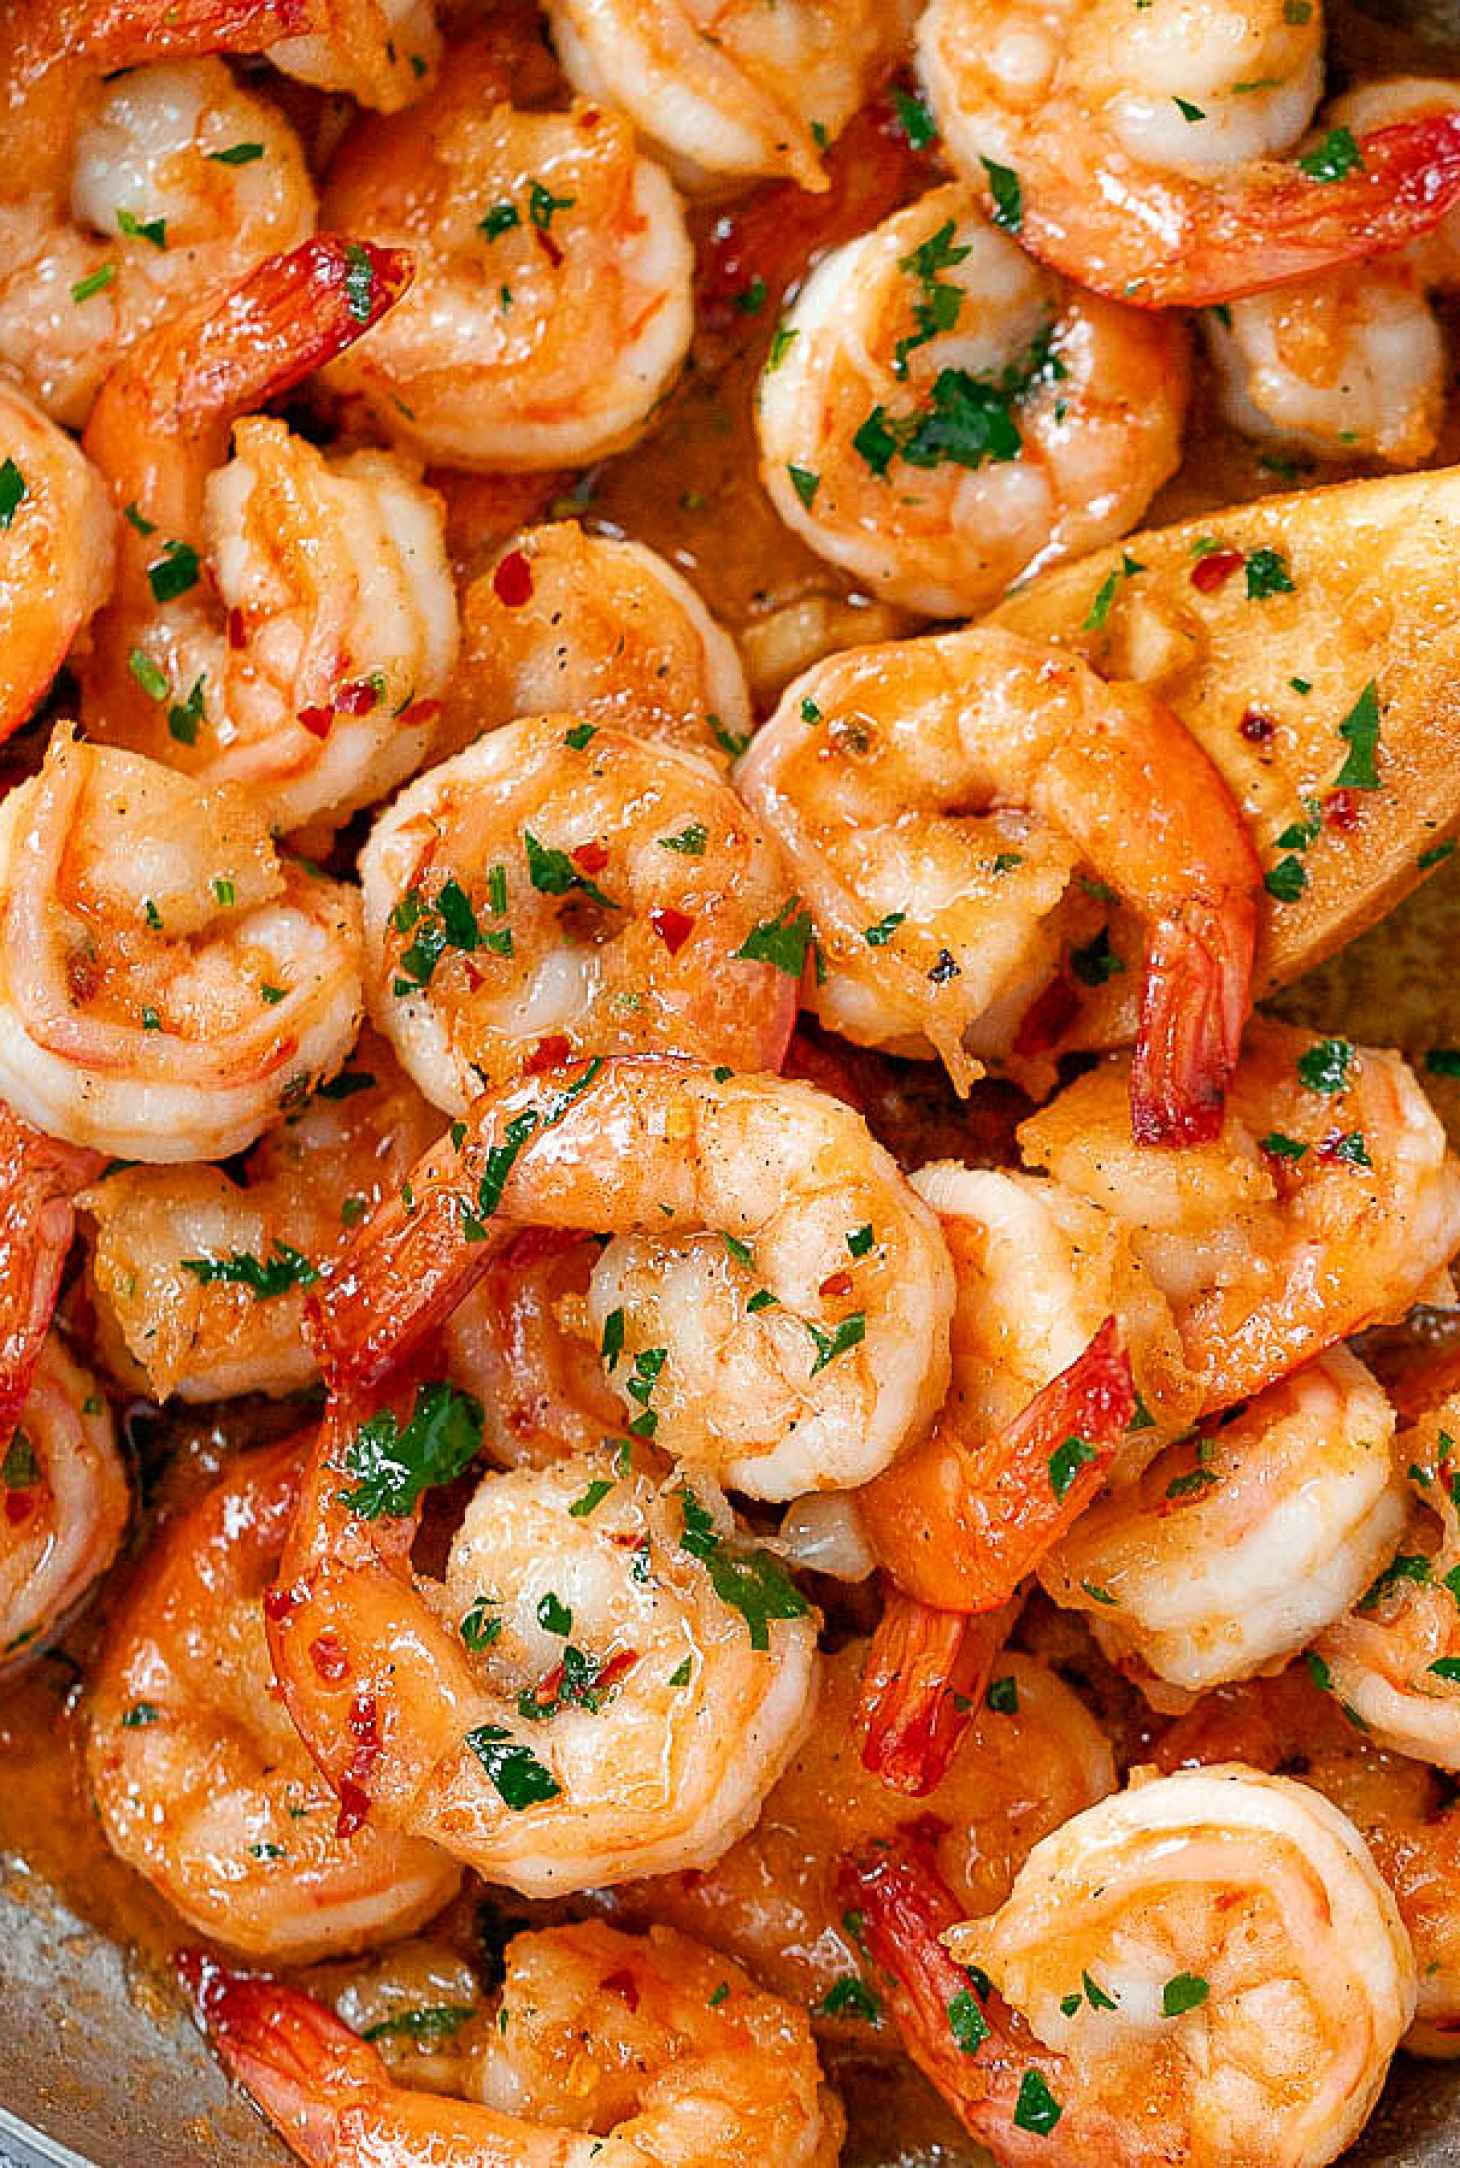 Low Carb Shrimp Recipes: 21 Shrimp Recipes for Easy Low Carb Keto ...